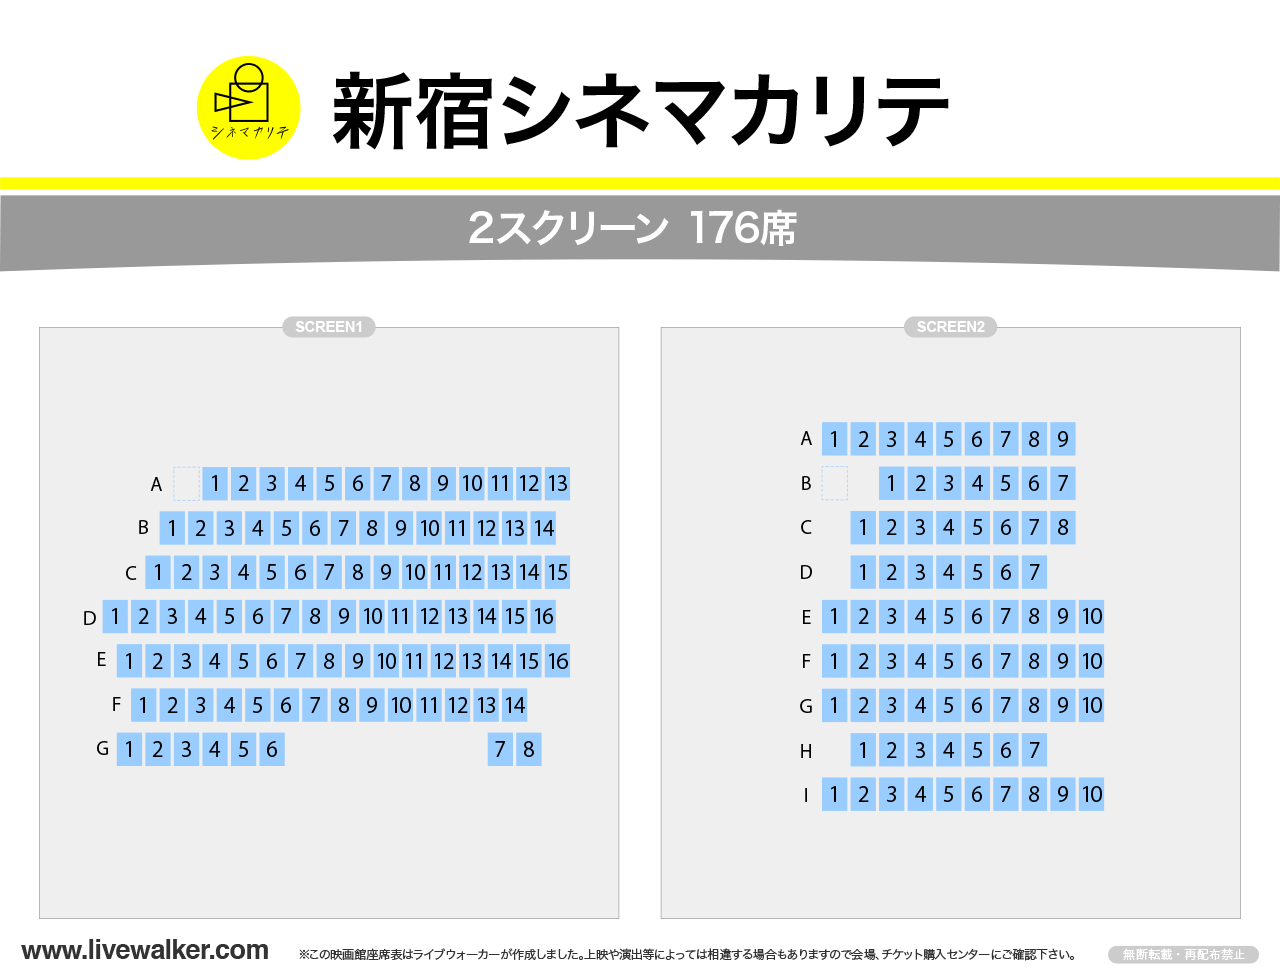 新宿シネマカリテスクリーンの座席表